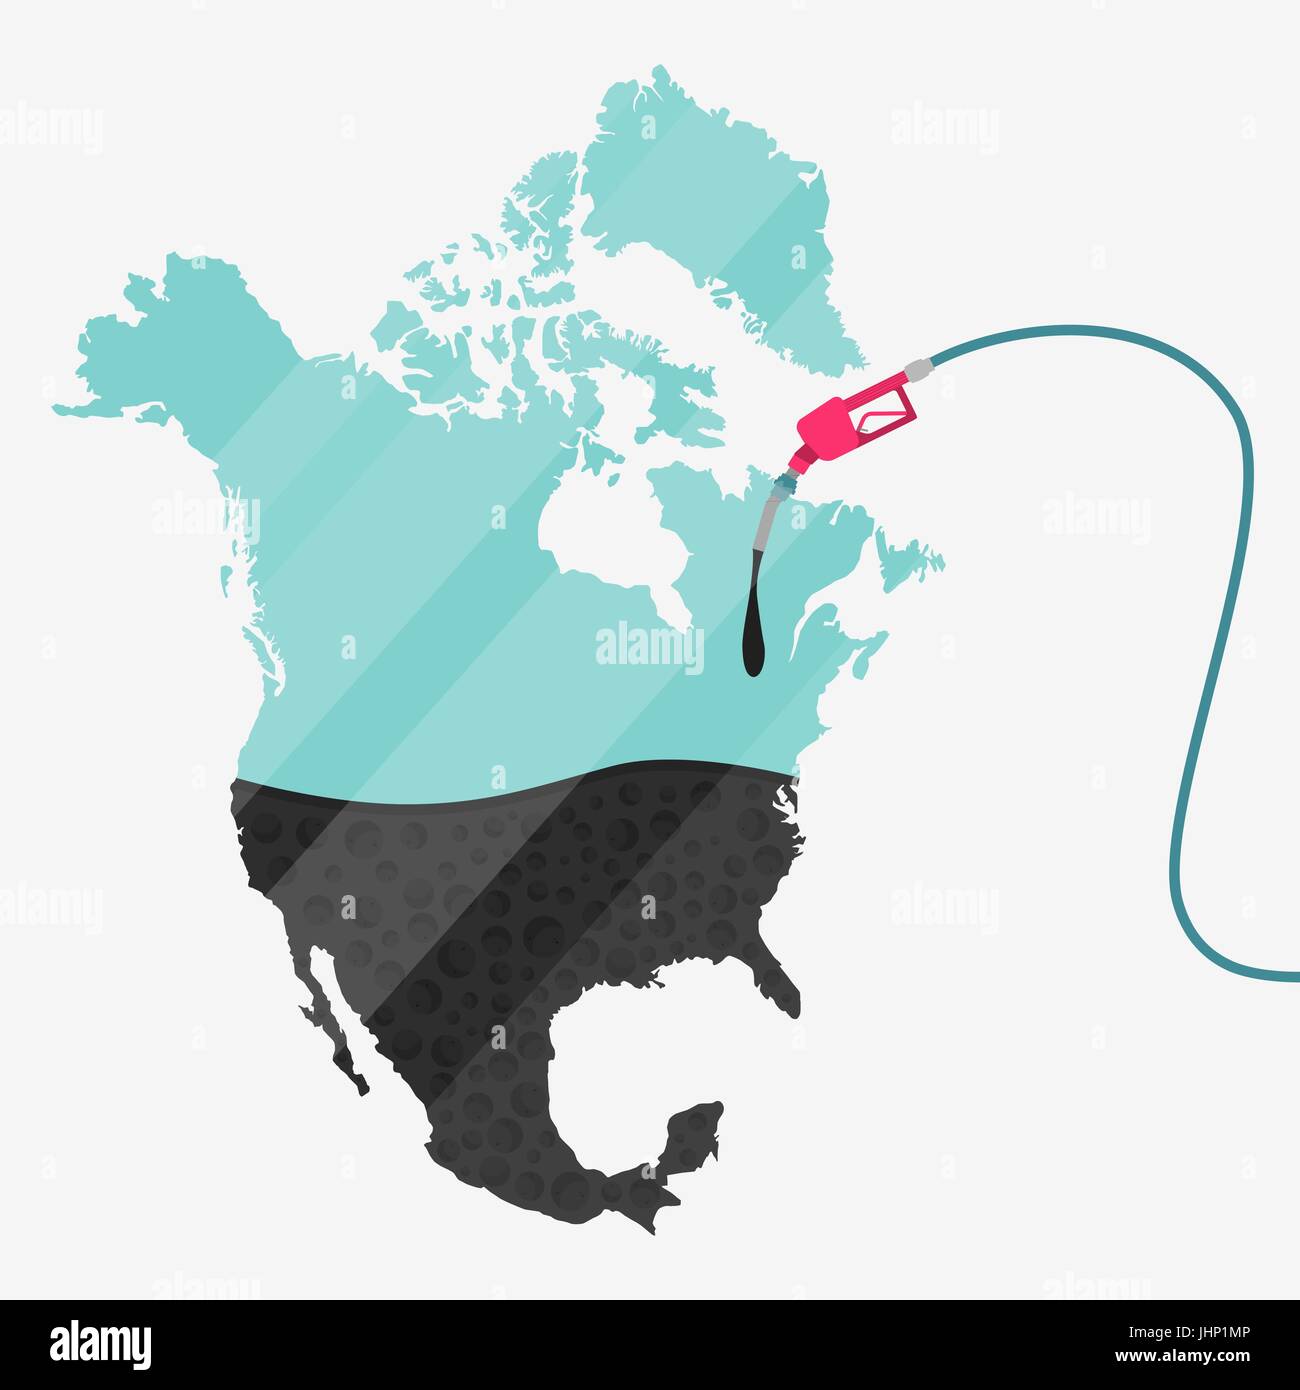 Karte von Nordamerika von Öl getankt werden. Gas Pumpe betriebenen Karte. Auf der Karte gibt es Glas Reflexion. Konzeptionelle. Öl produzierenden oder Importländern. Stock Vektor